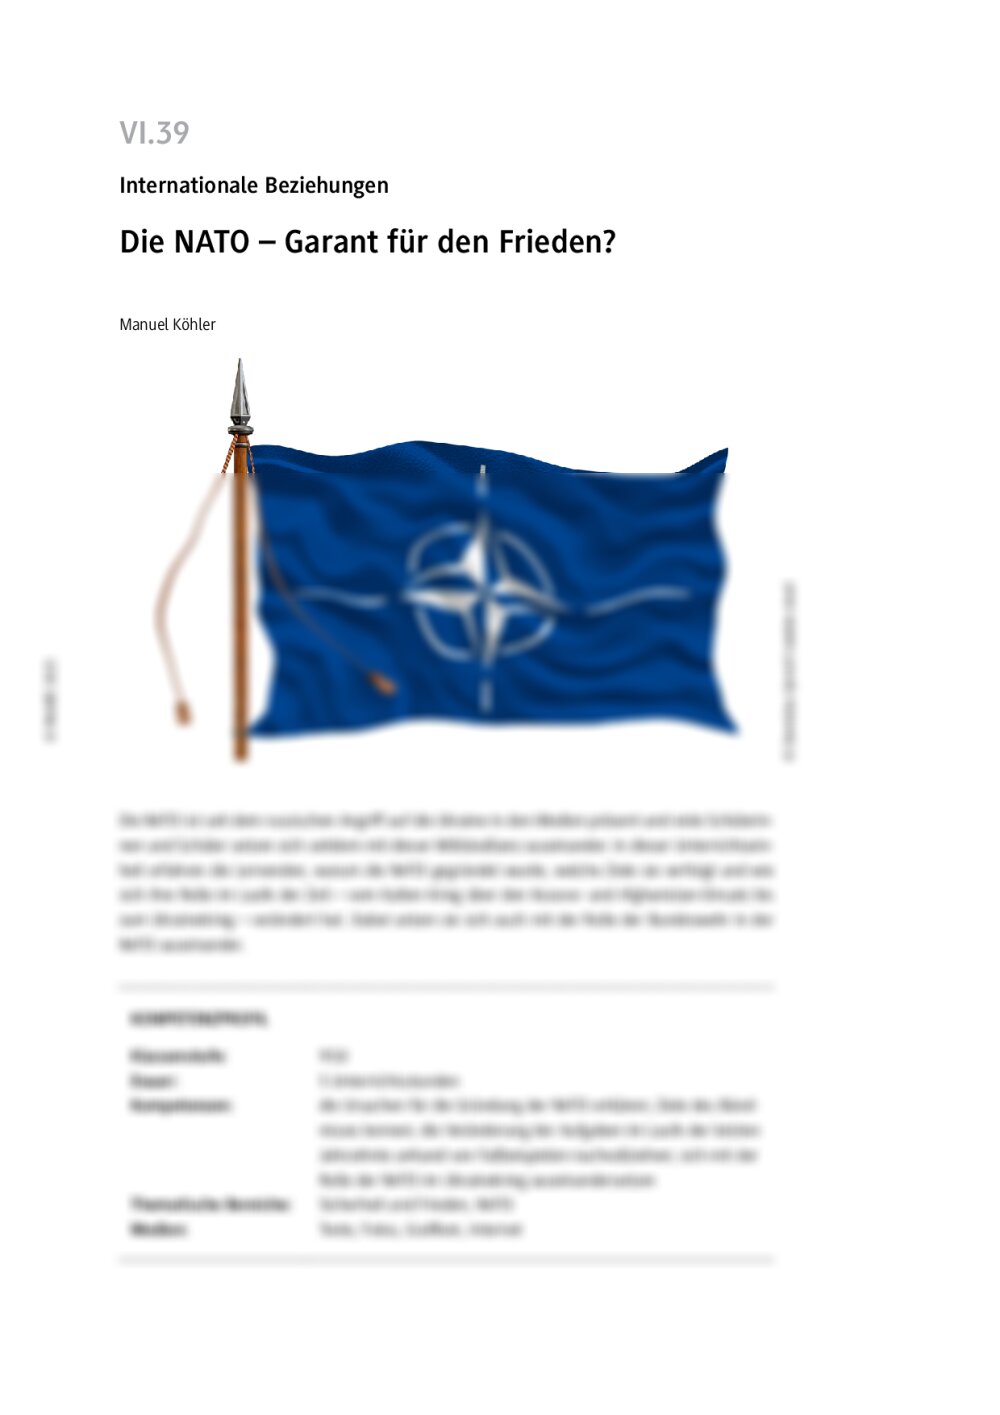 Die NATO - Seite 1